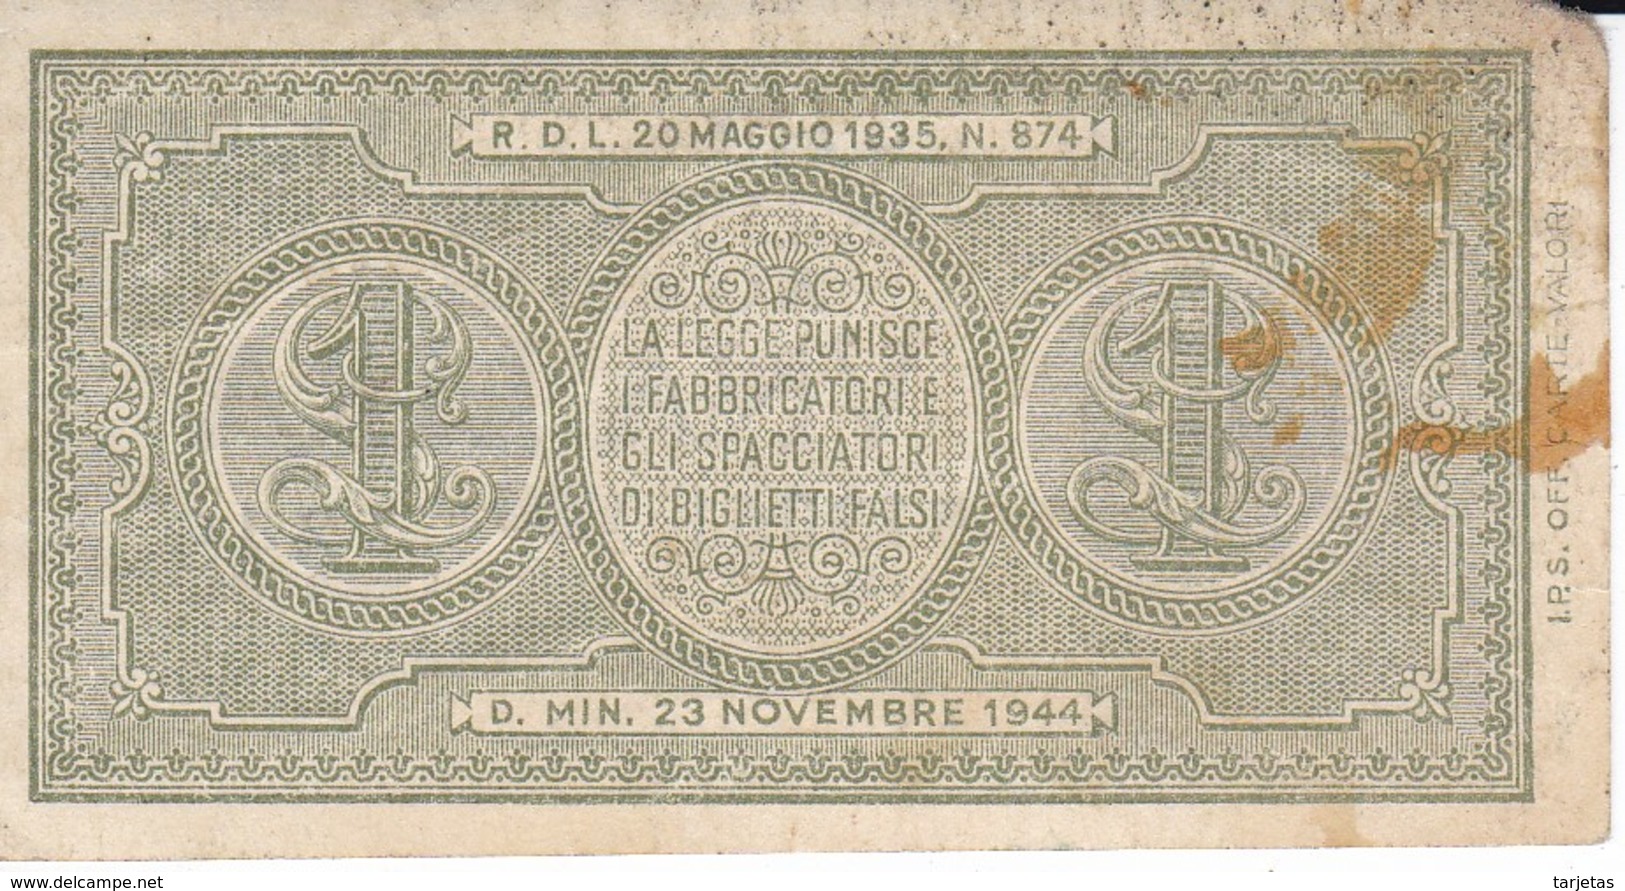 BILLETE DE ITALIA DE 1 LIRA  BIGLIETO DI STATO DEL AÑO 1944  (BANKNOTE) - Italia – 1 Lira